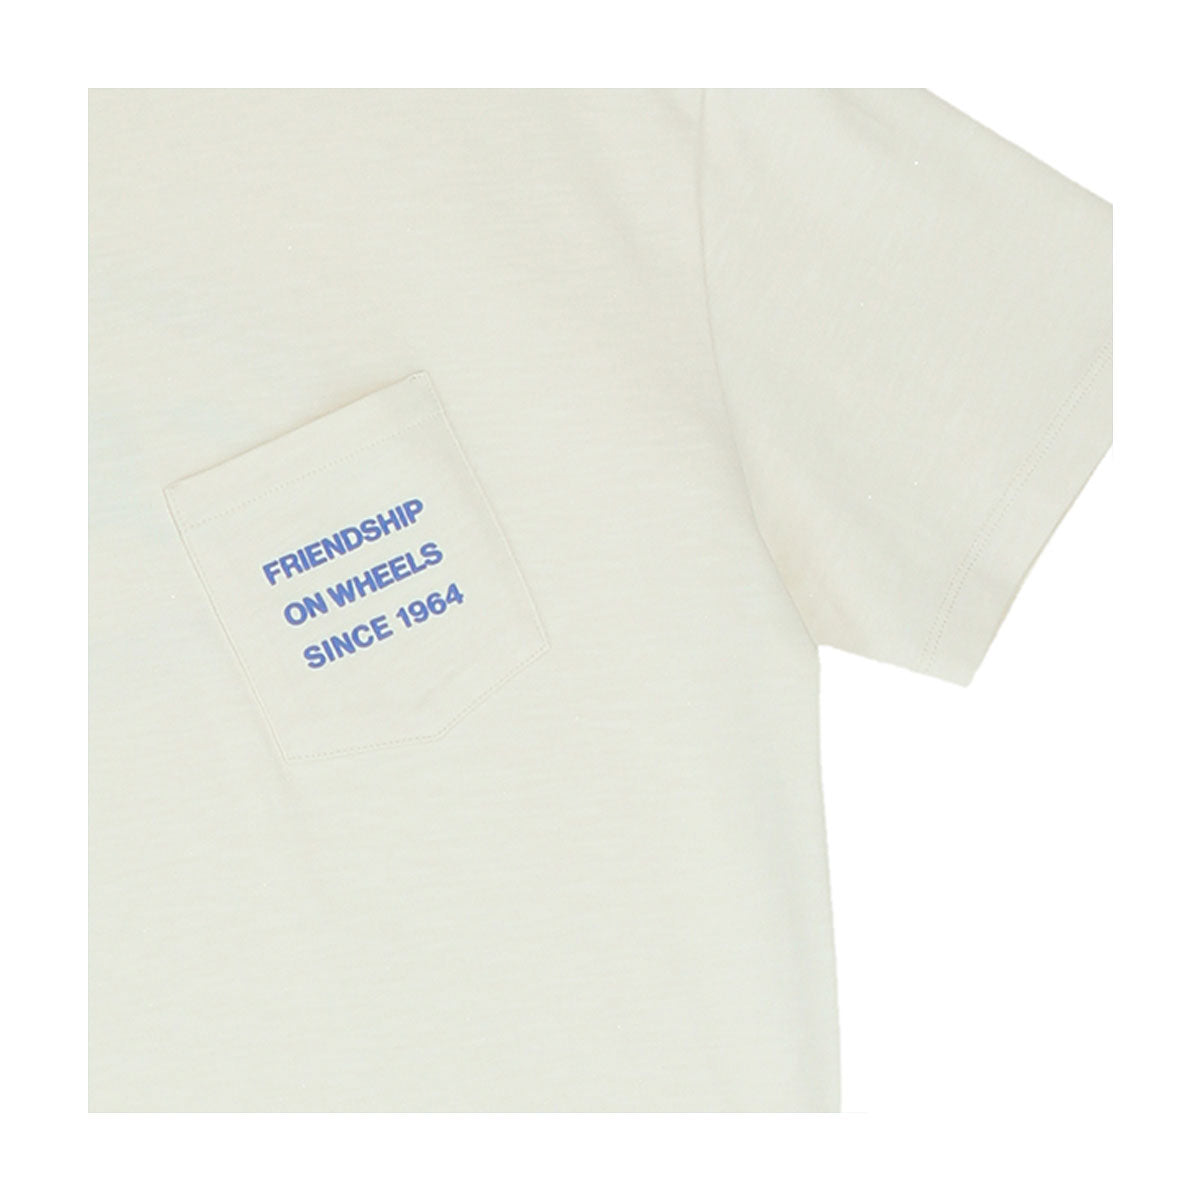 Camiseta bolsillo Friends (Off White)